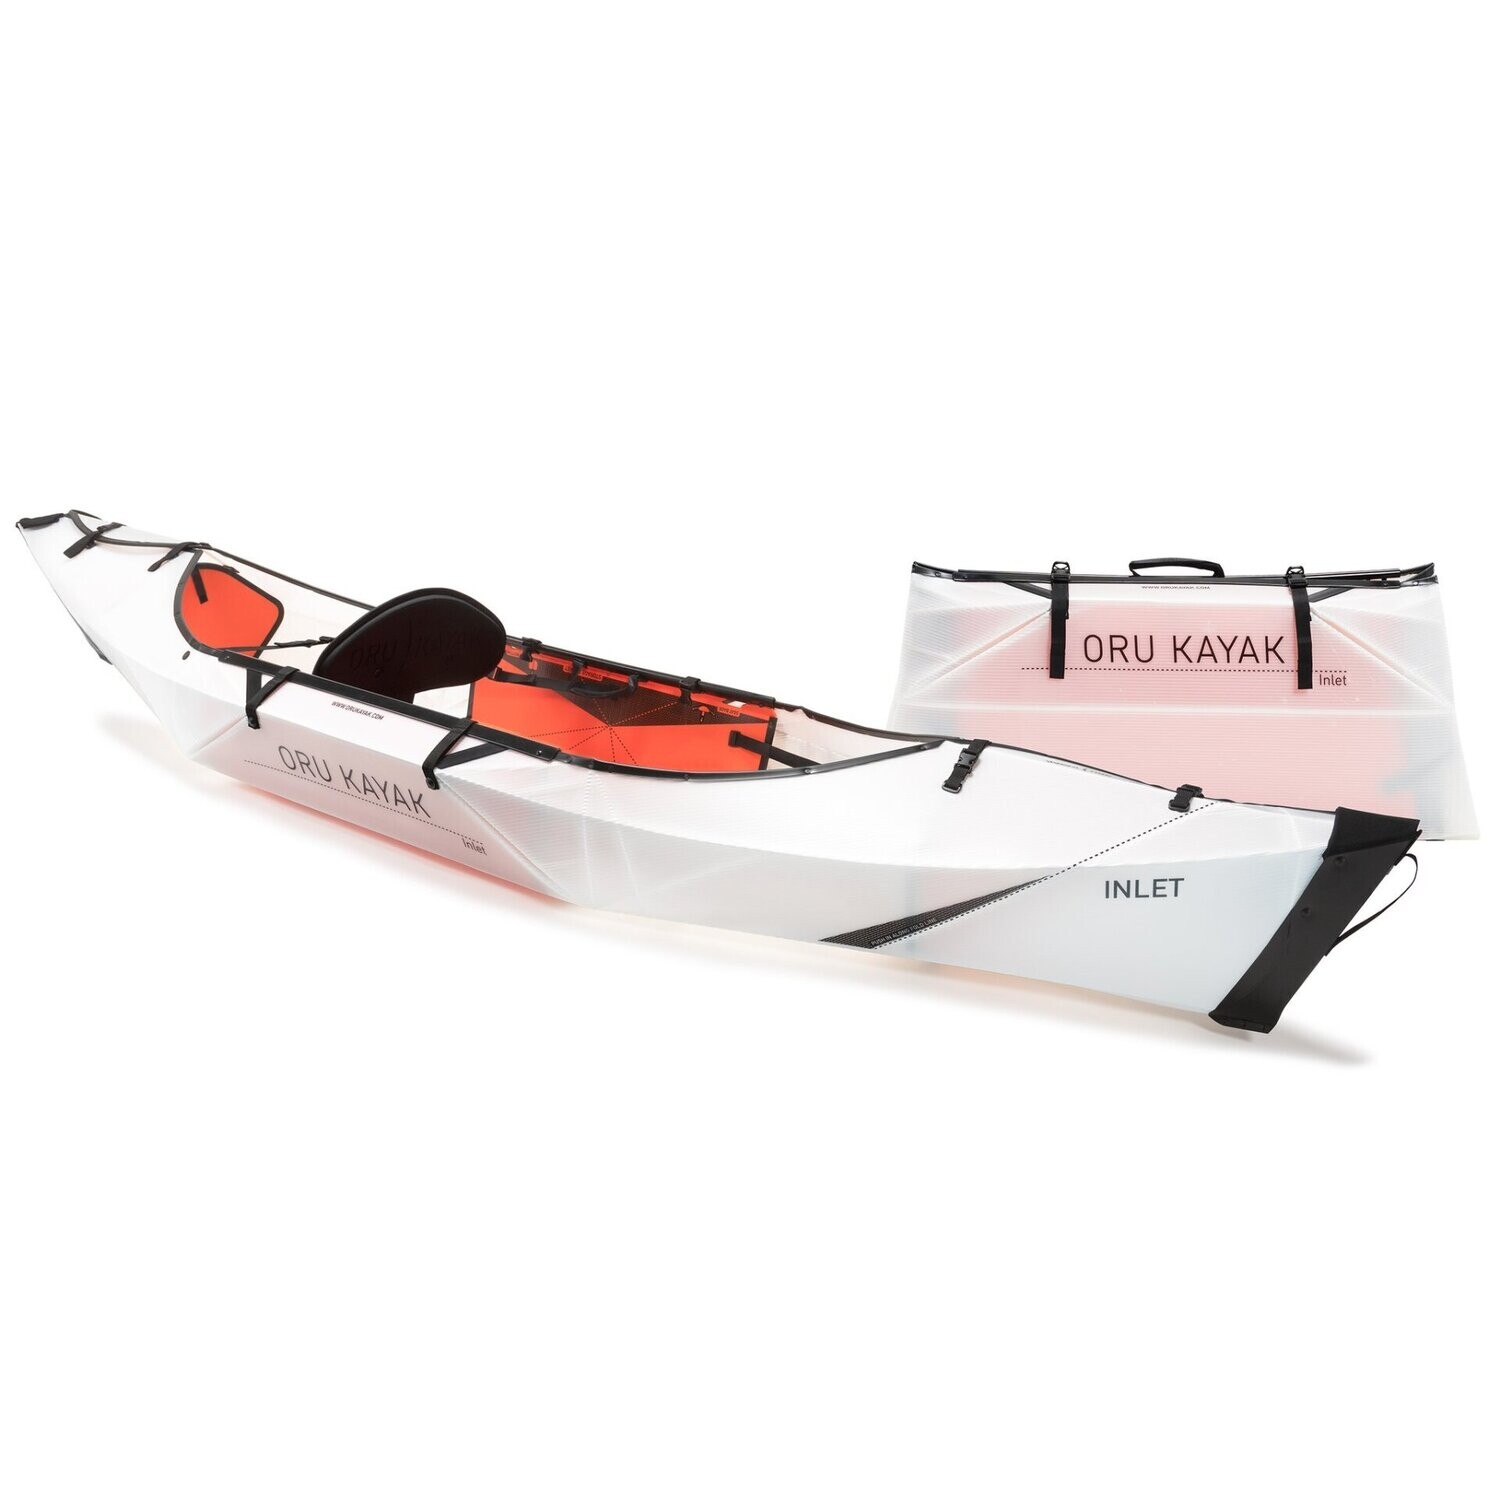 Oru-Kayak "Inlet" Vorführboot